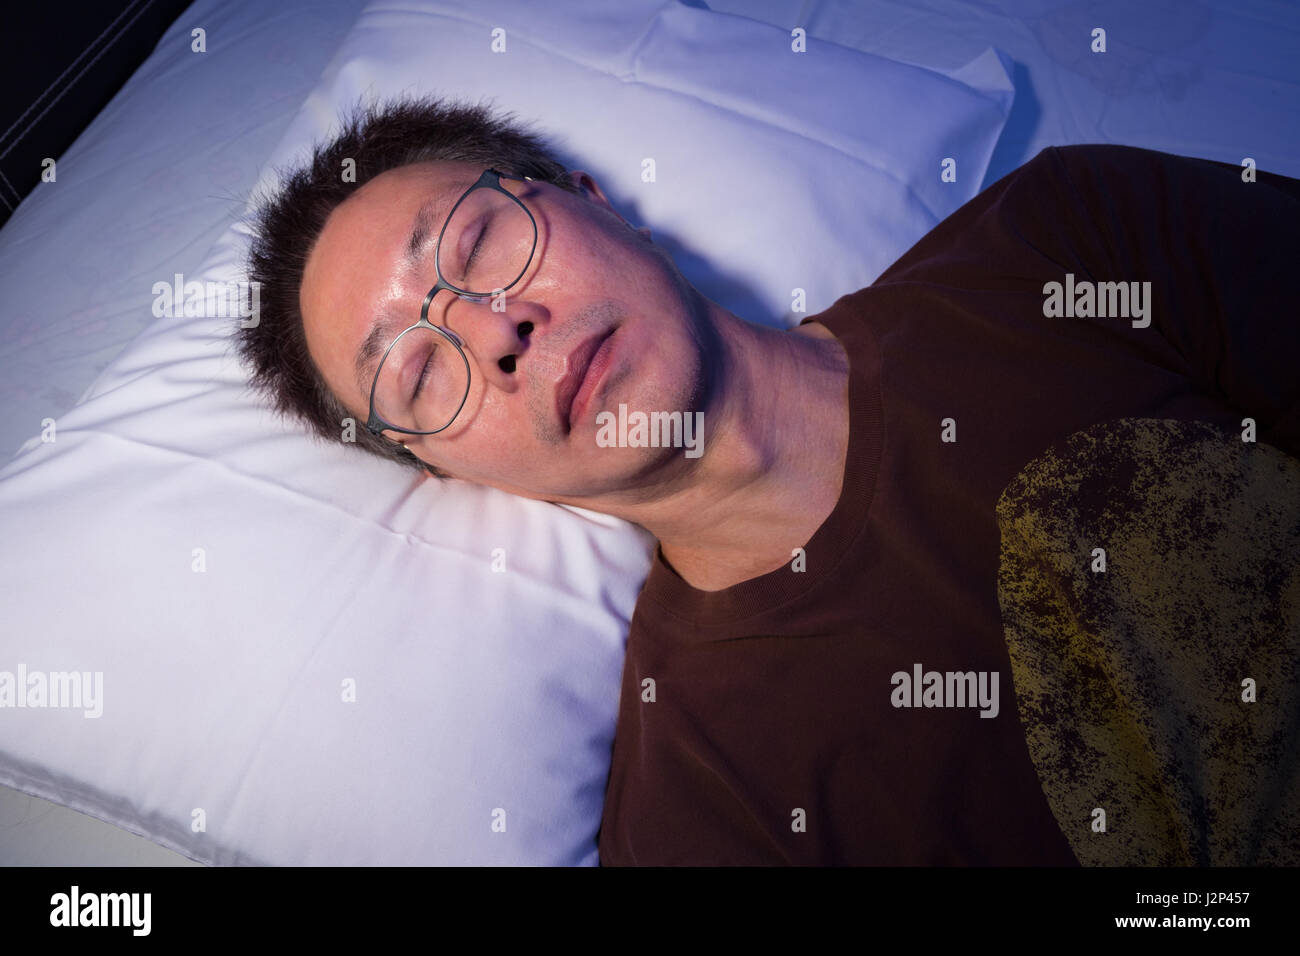 Asiatischer Mann ein Nickerchen oder schlafen im Bett mit seiner Brille auf, blaue Nacht Lichtwirkung mit warmer direkte Beleuchtung auf Gesicht Stockfoto